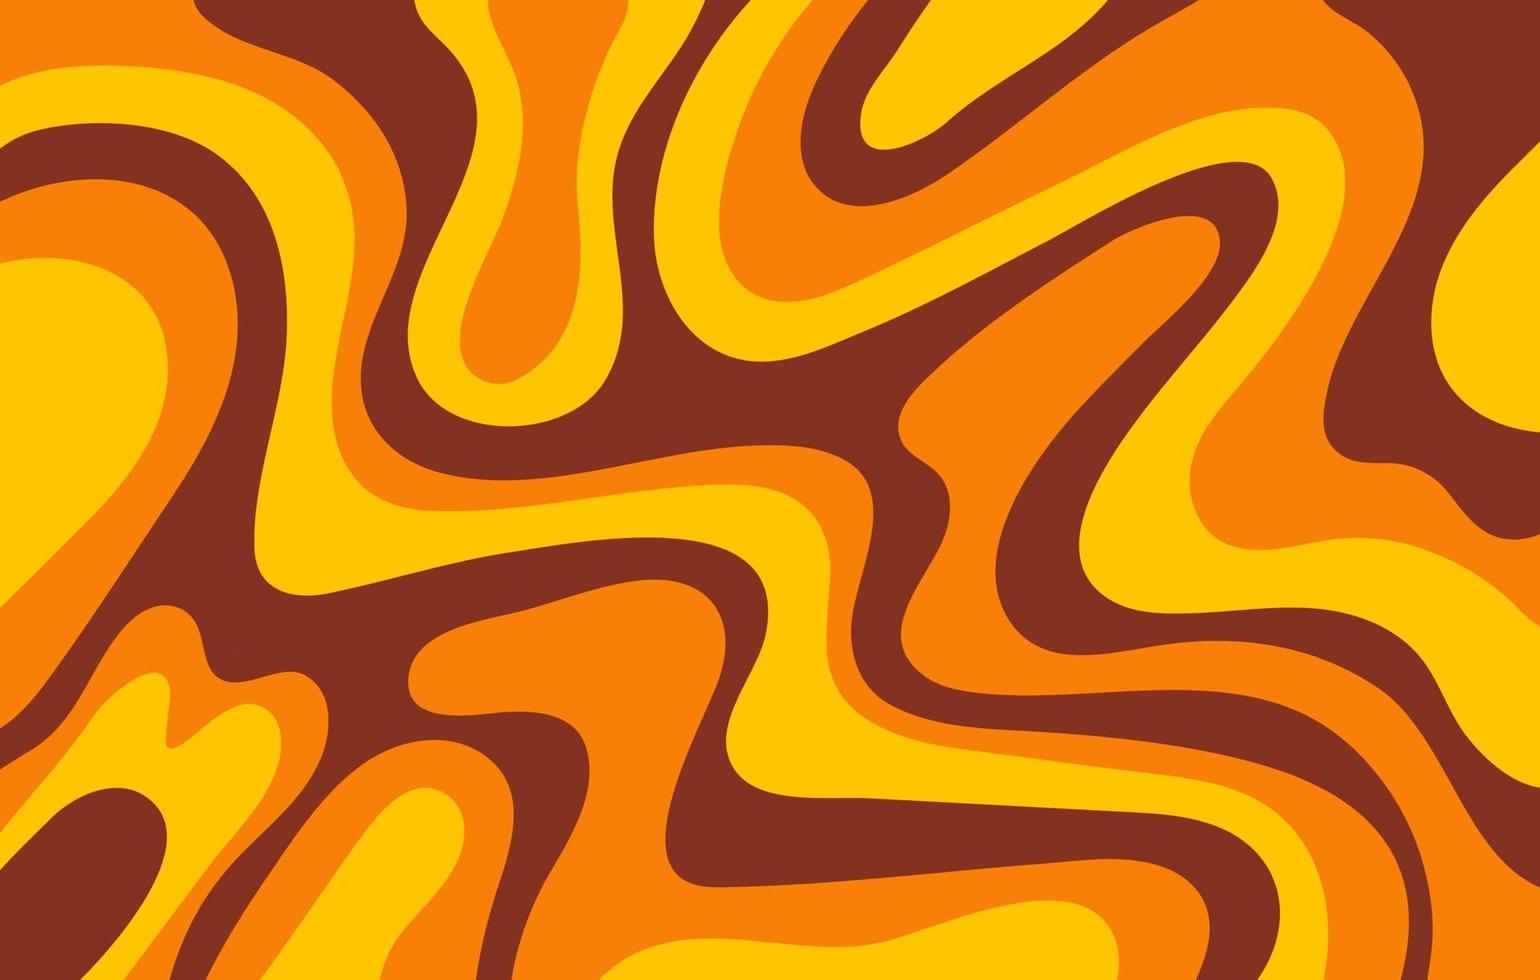 abstrakt horisontell bakgrund med färgglada vågor i gula, orange och bruna färger. trendig vektorillustration i retrostil 60-, 70-tal. vektor